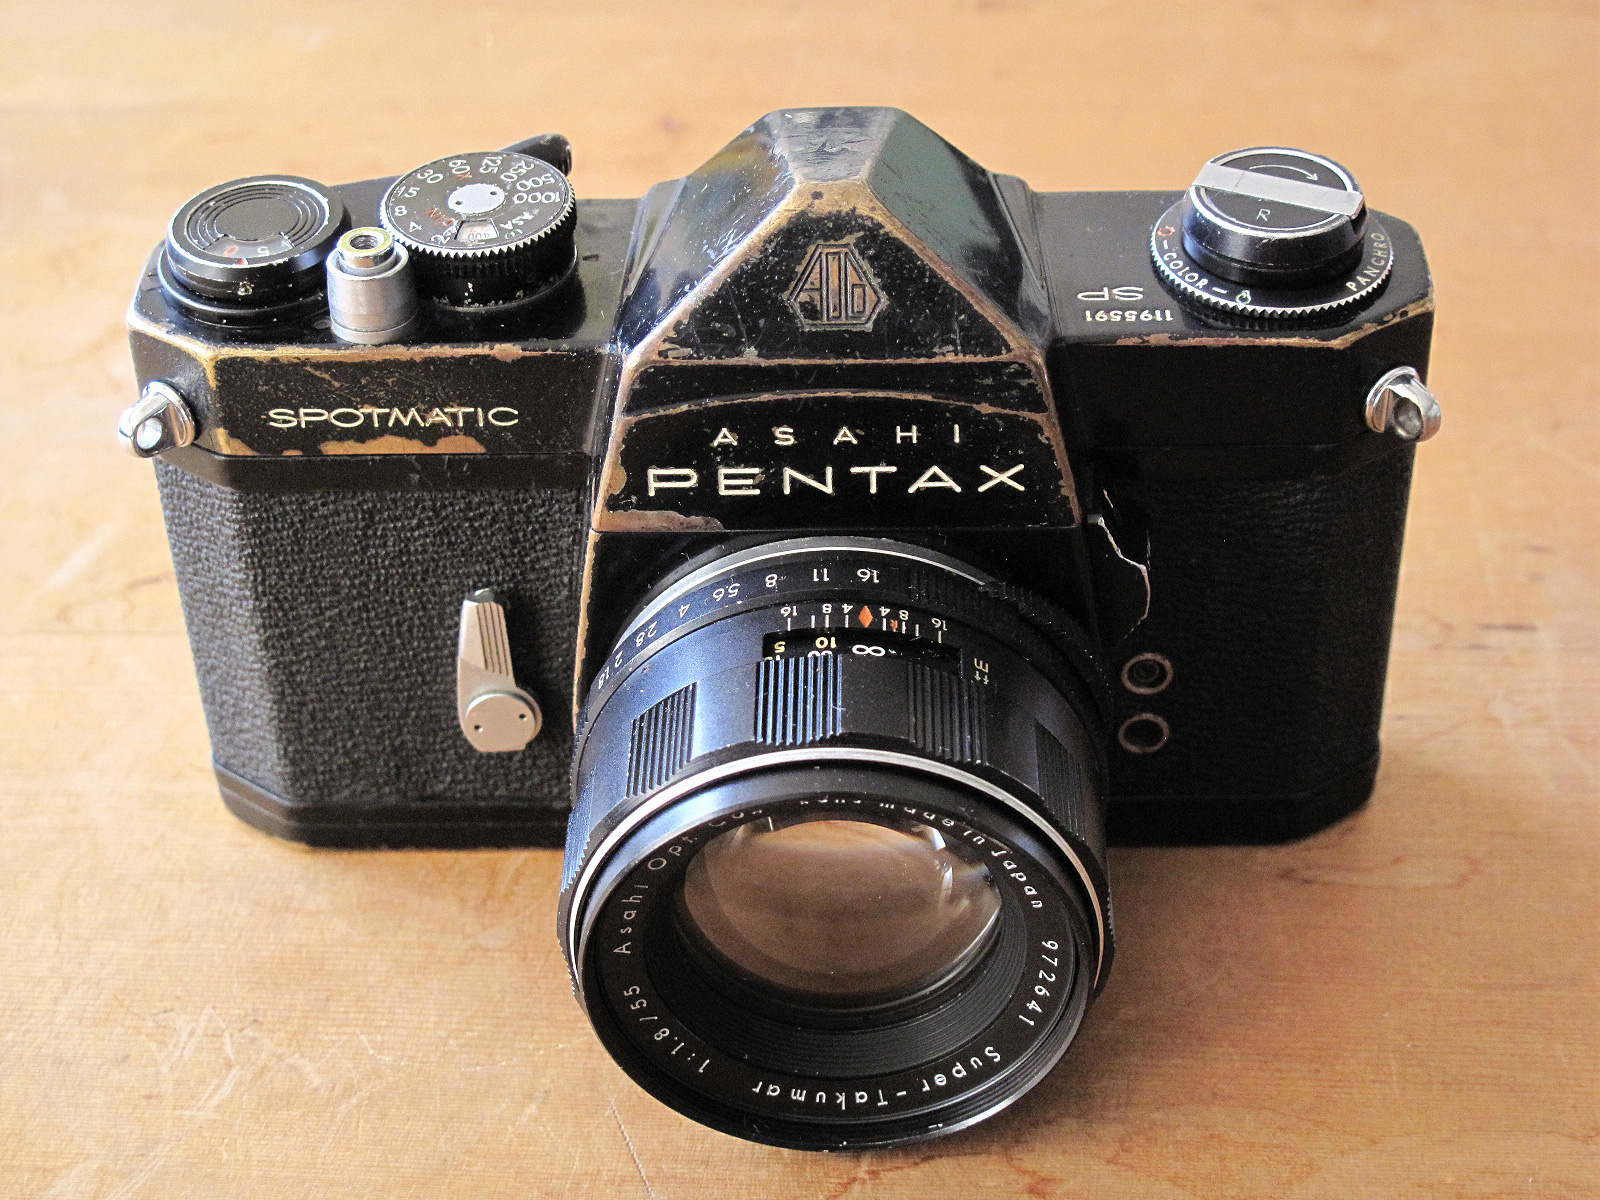 PENTAX SP Black | イエネコカメラ 名古屋市 中古フィルムカメラを修理販売